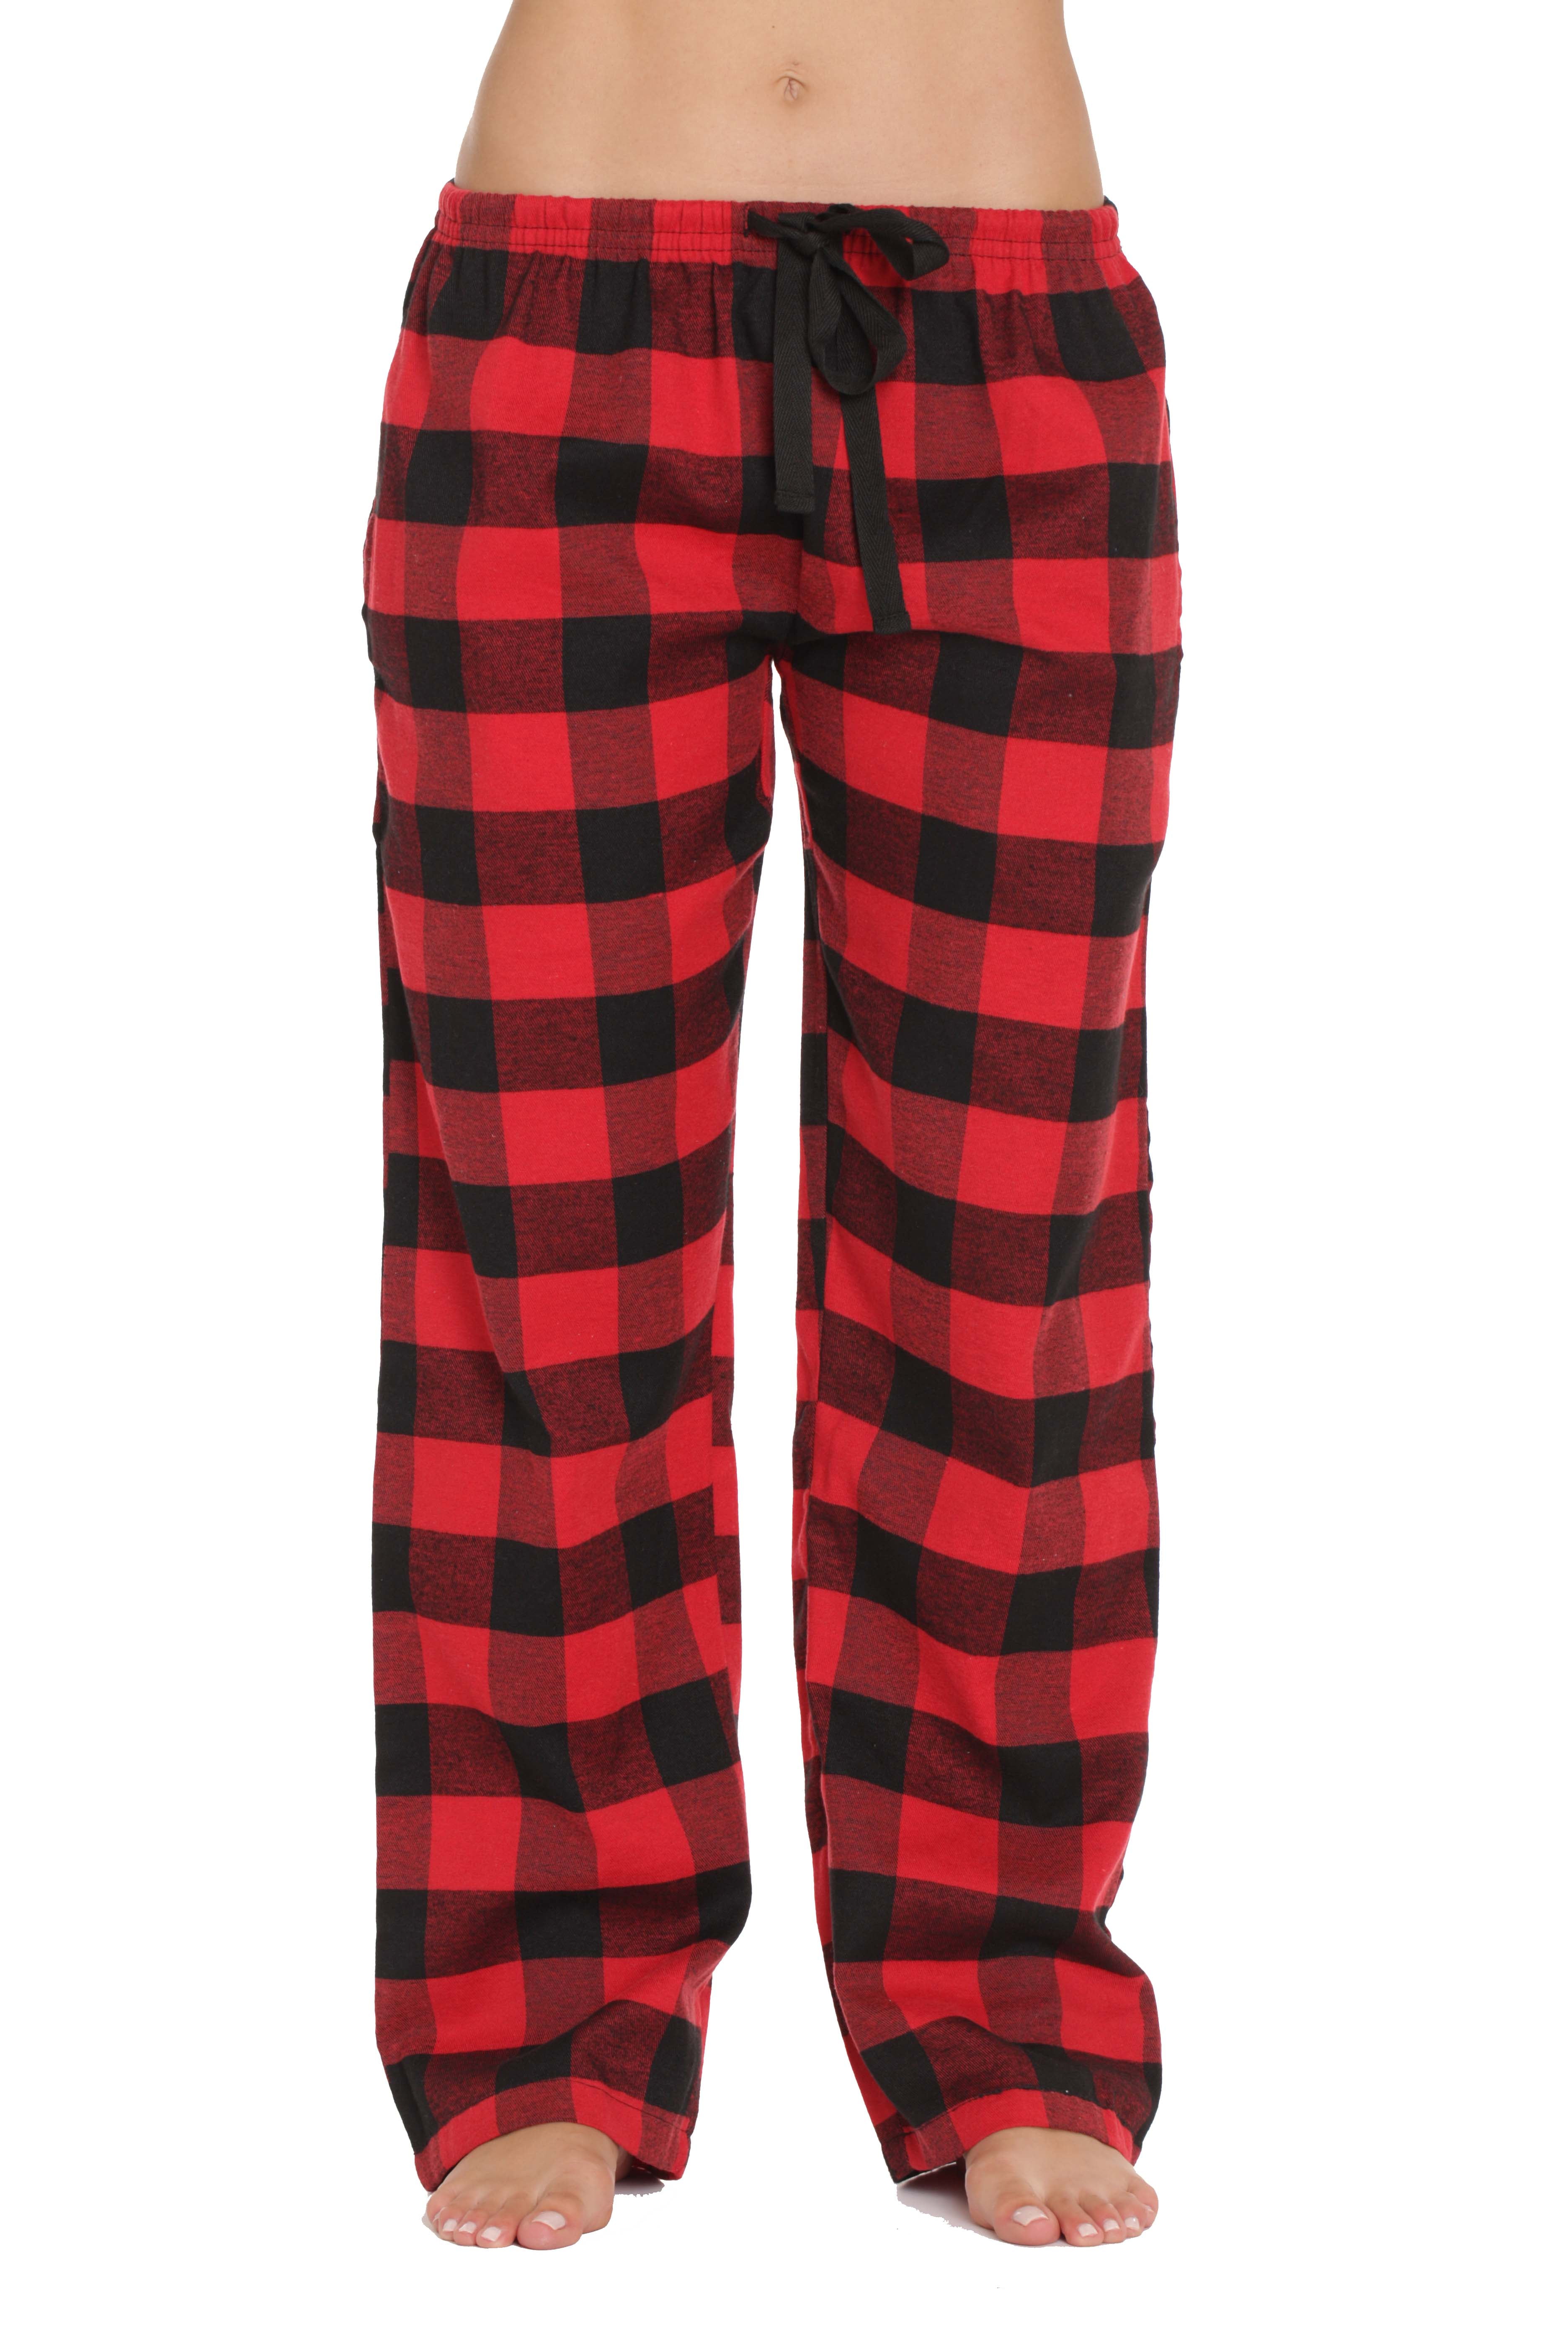 #followme Flannel Pajama Pants for Women Sleepwear PJs 45805-10195-RED ...